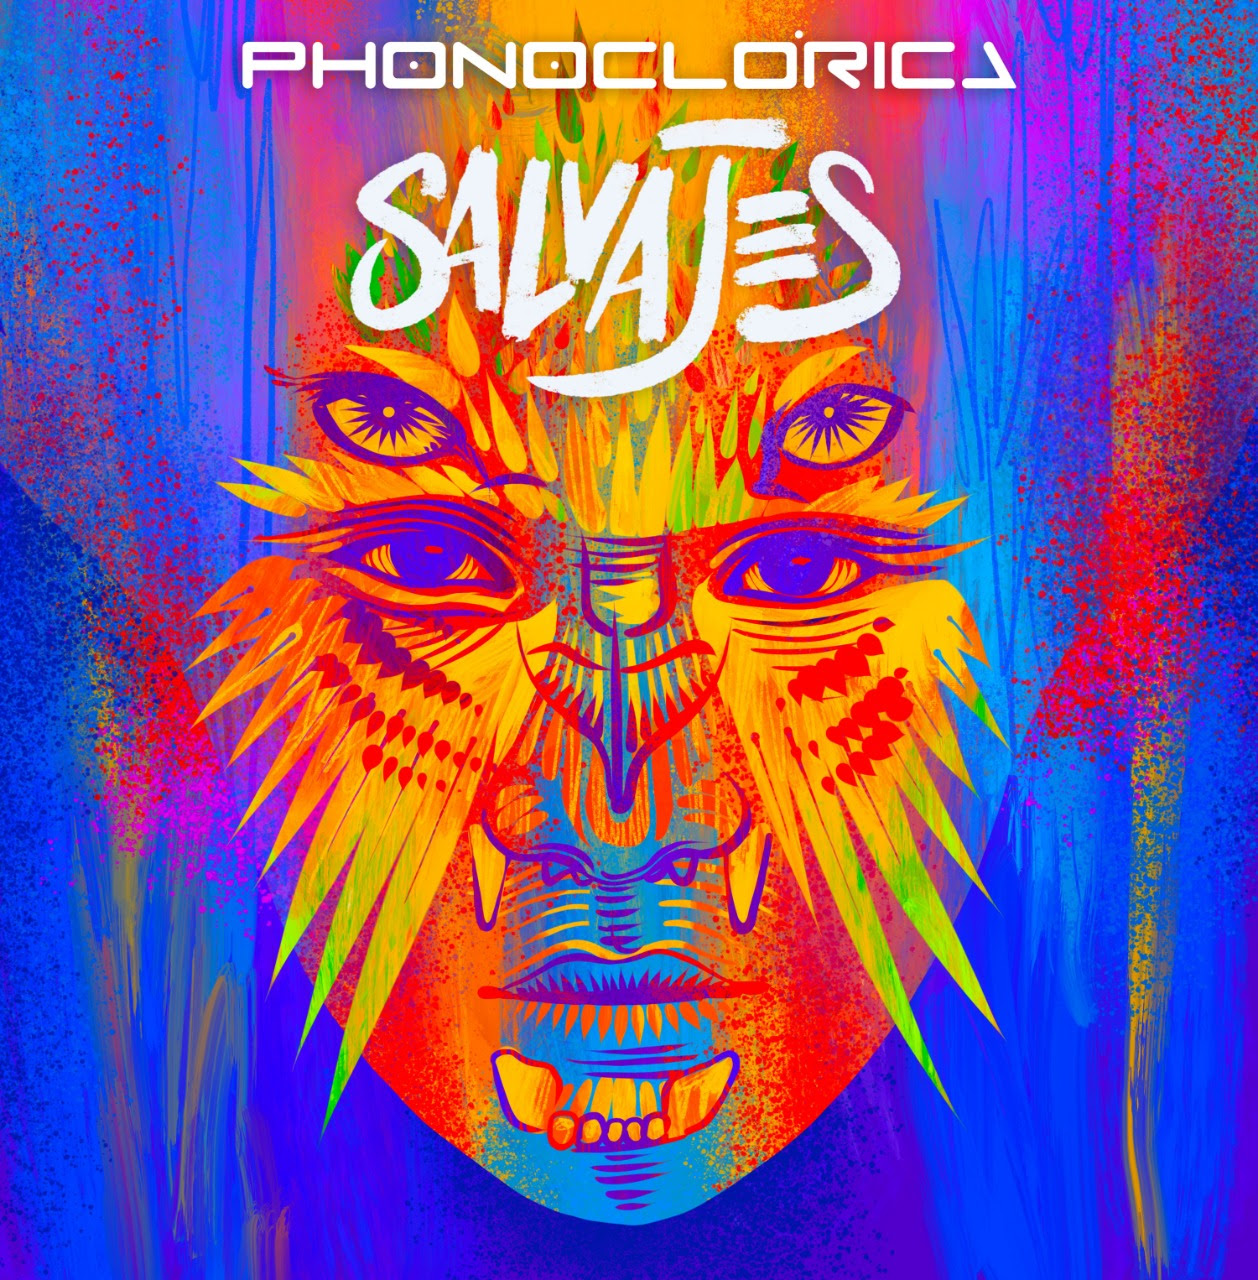 La banda colombiana Phonoclórica lanza ‘Salvajes’, una canción de empoderamiento y conciencia – @PHONOCLORICA